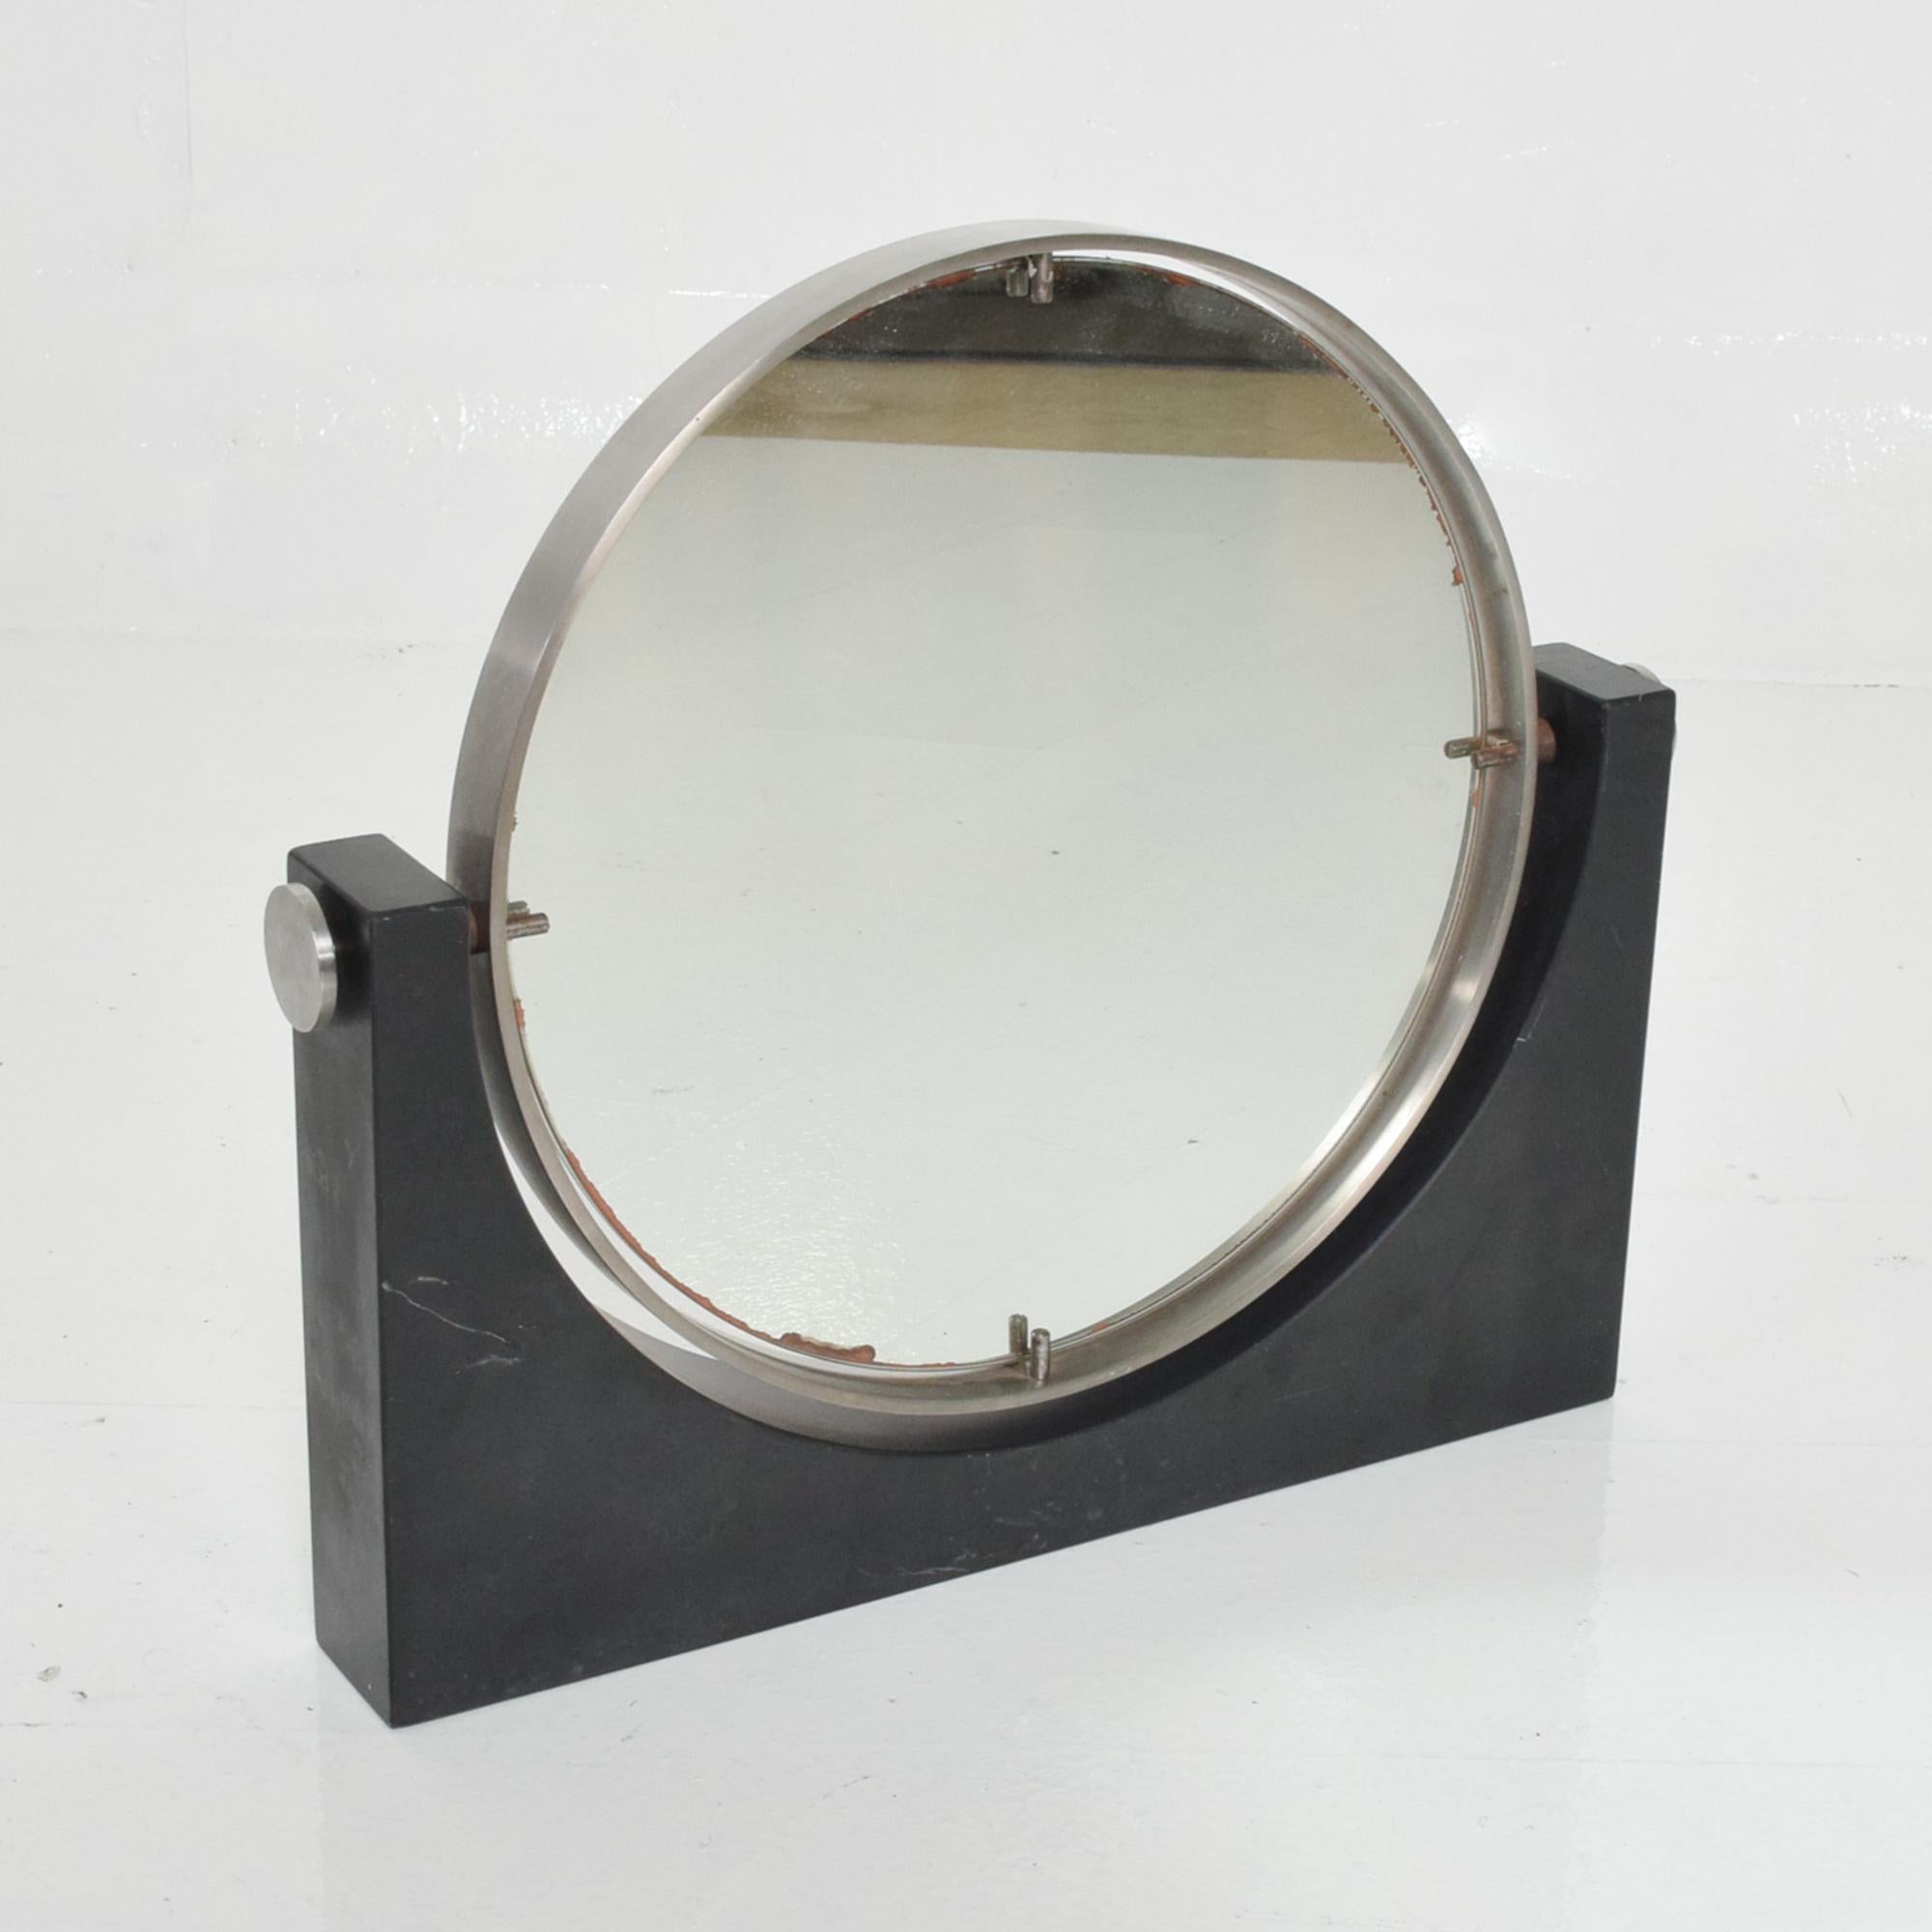 Angelo Mangiarotti Italienisch Modern Tischplatte Eitelkeit Make-up-Spiegel
Schwarzer Carrara-Marmor und Edelstahl.
Hergestellt in Italien in den 1970er Jahren.
Unmarkiert.
Beidseitig schwenkbarer Spiegel.
16 H x 18 B x 2,25 T, Durchmesser des